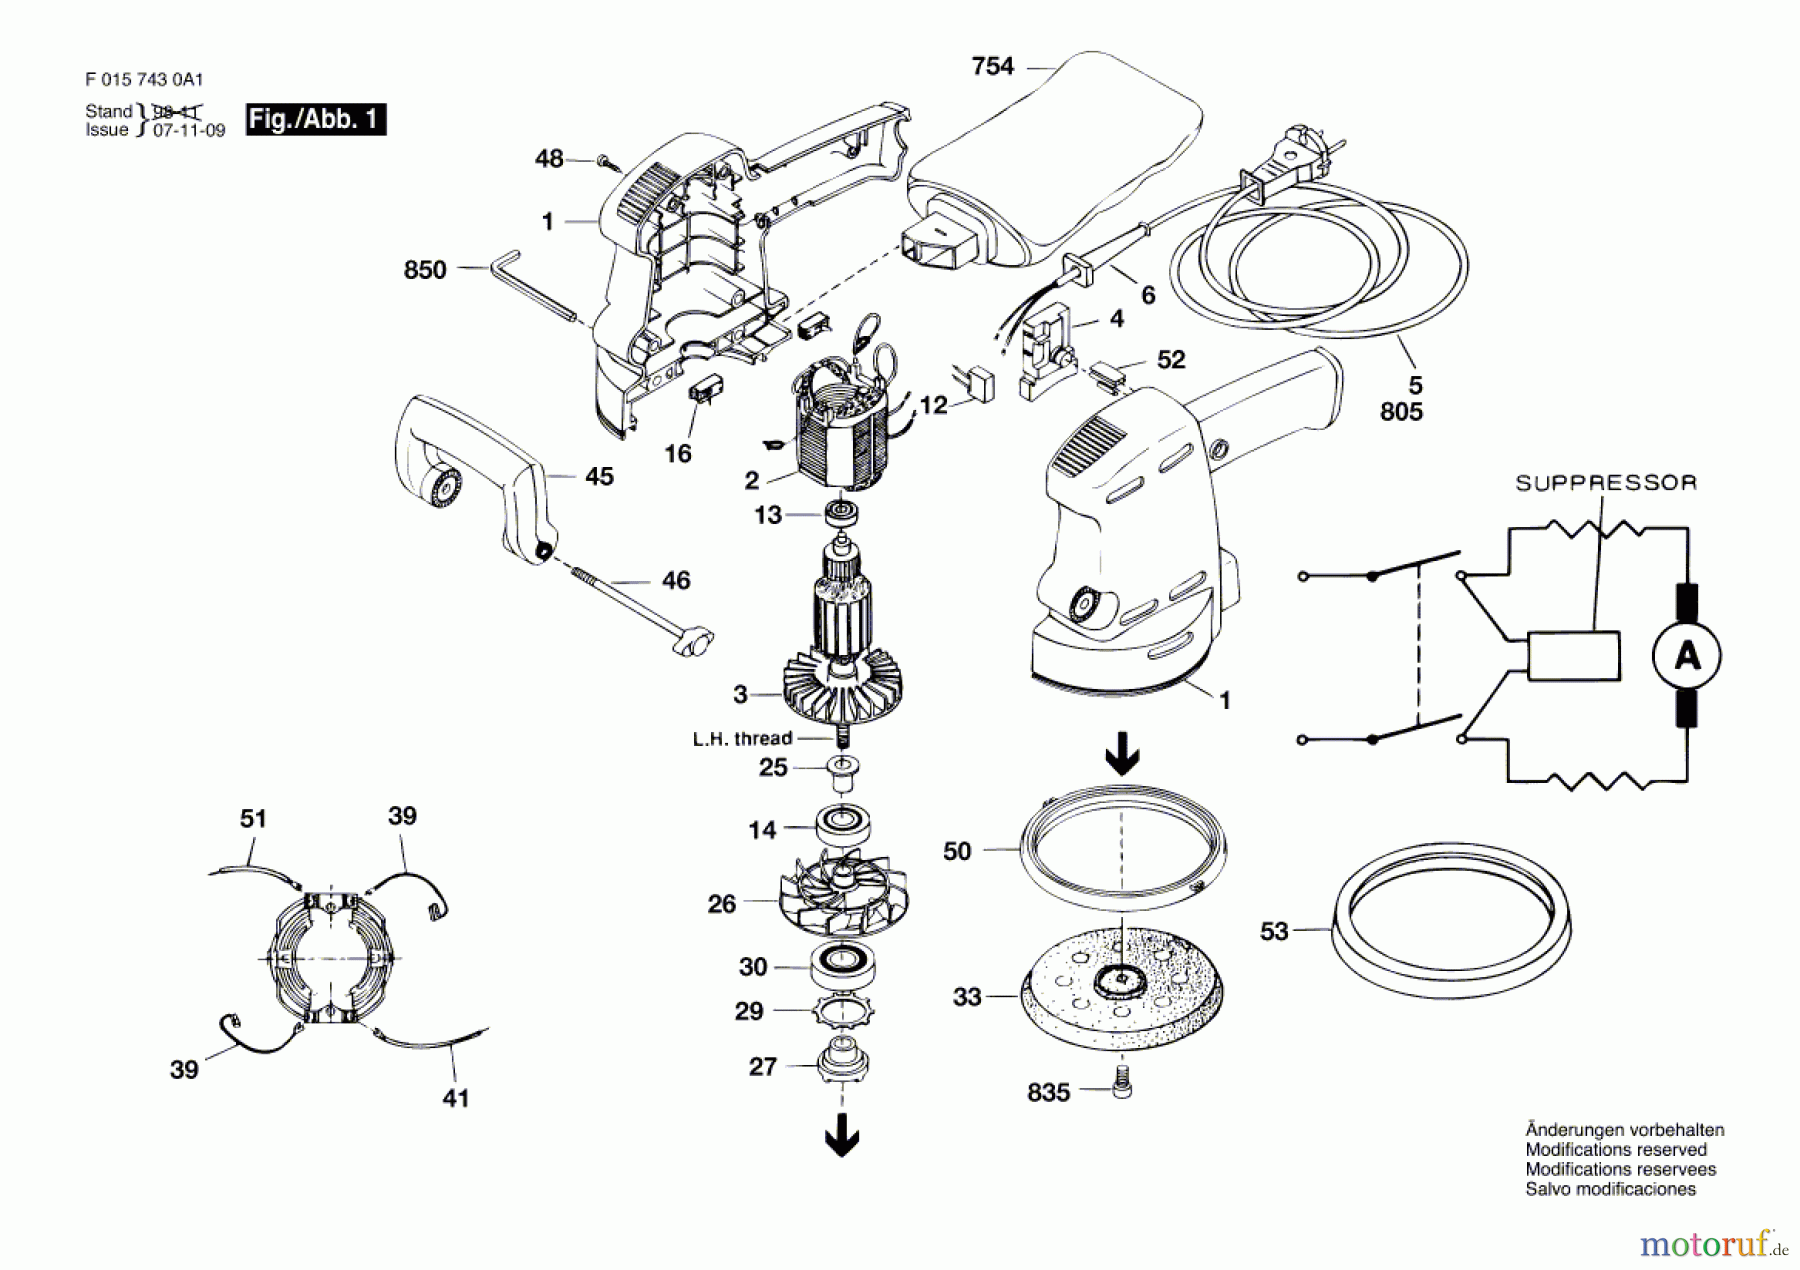  Bosch Werkzeug Exzenterschleifer 7430 H1 Seite 1